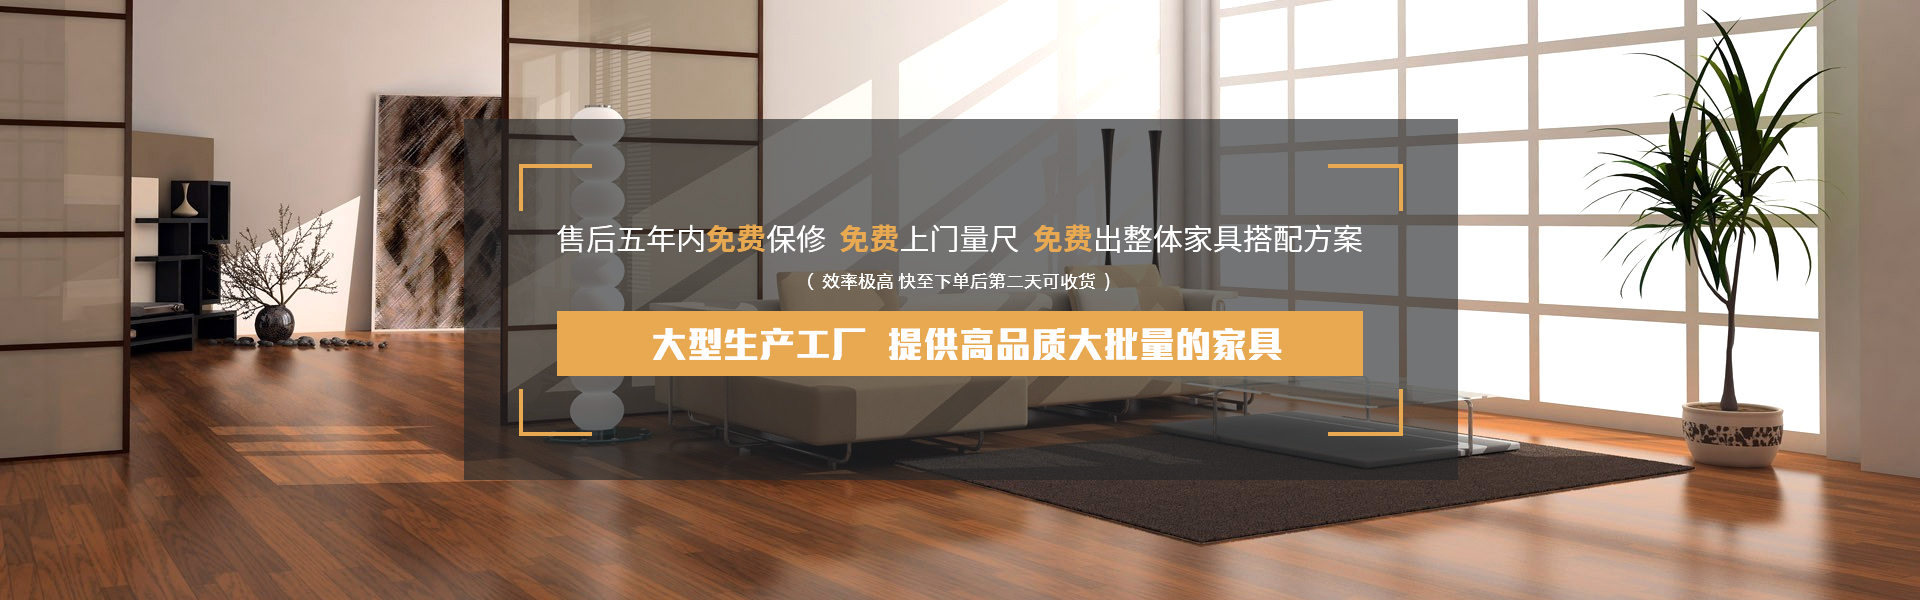 广州企奥办公家具厂_大型生产工厂,为您提供高品质大批量的家具